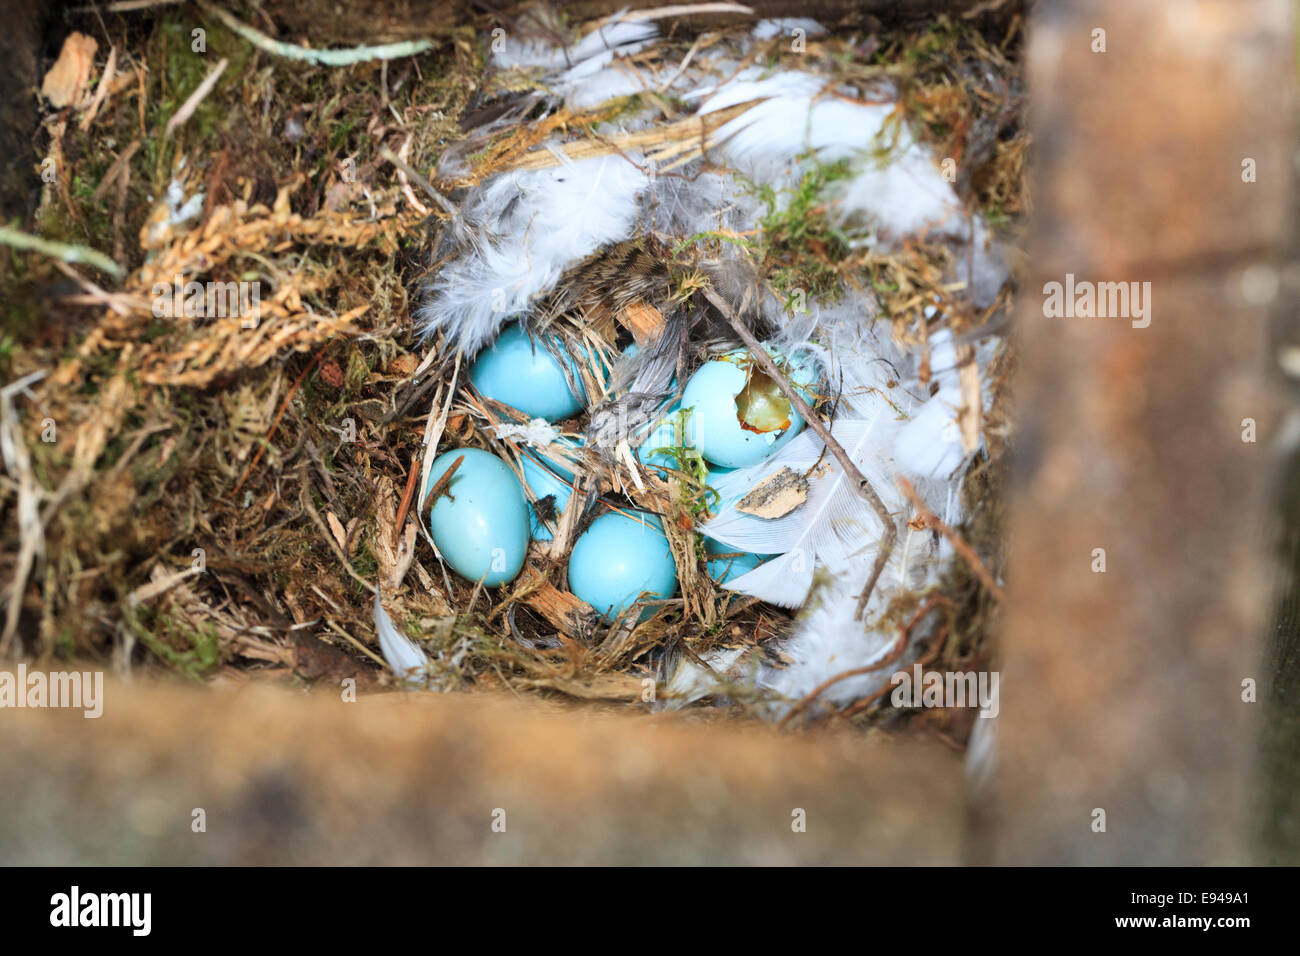 Гнездо горихвостки садовой разереное предположительно дятлом, Phoenicurus phoenicurus, Redstart. Кандалакшский залив Белого моря Stock Photo